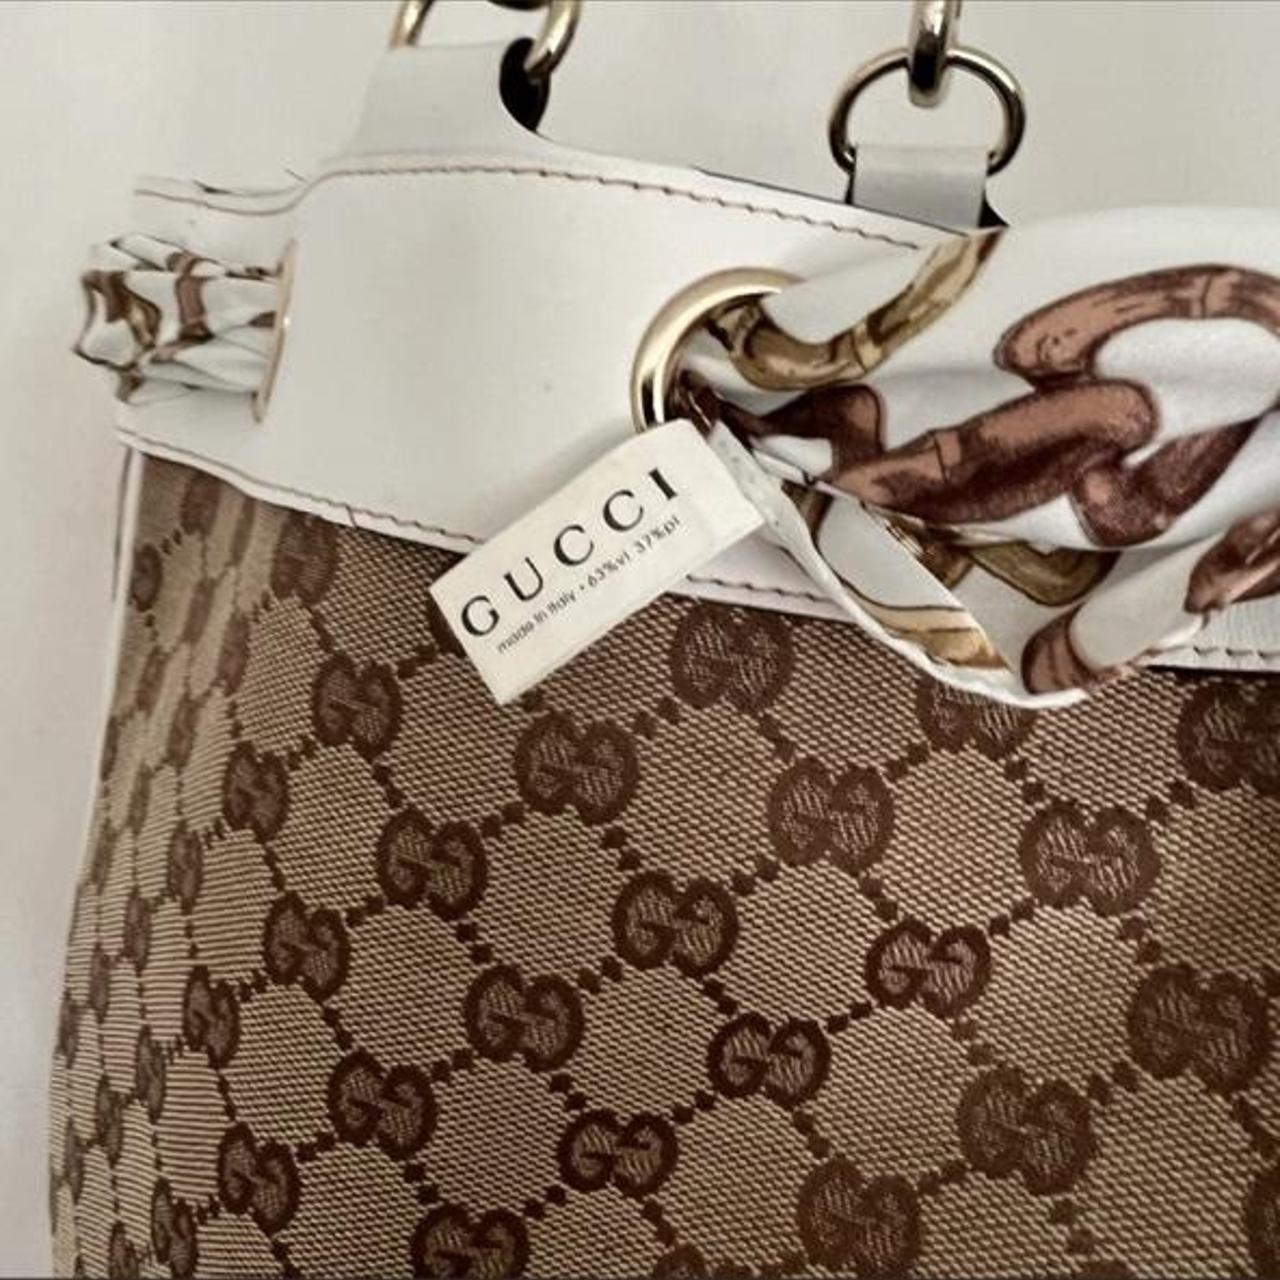 Gucci Lace Positano Scarf Tote Bag - Beige